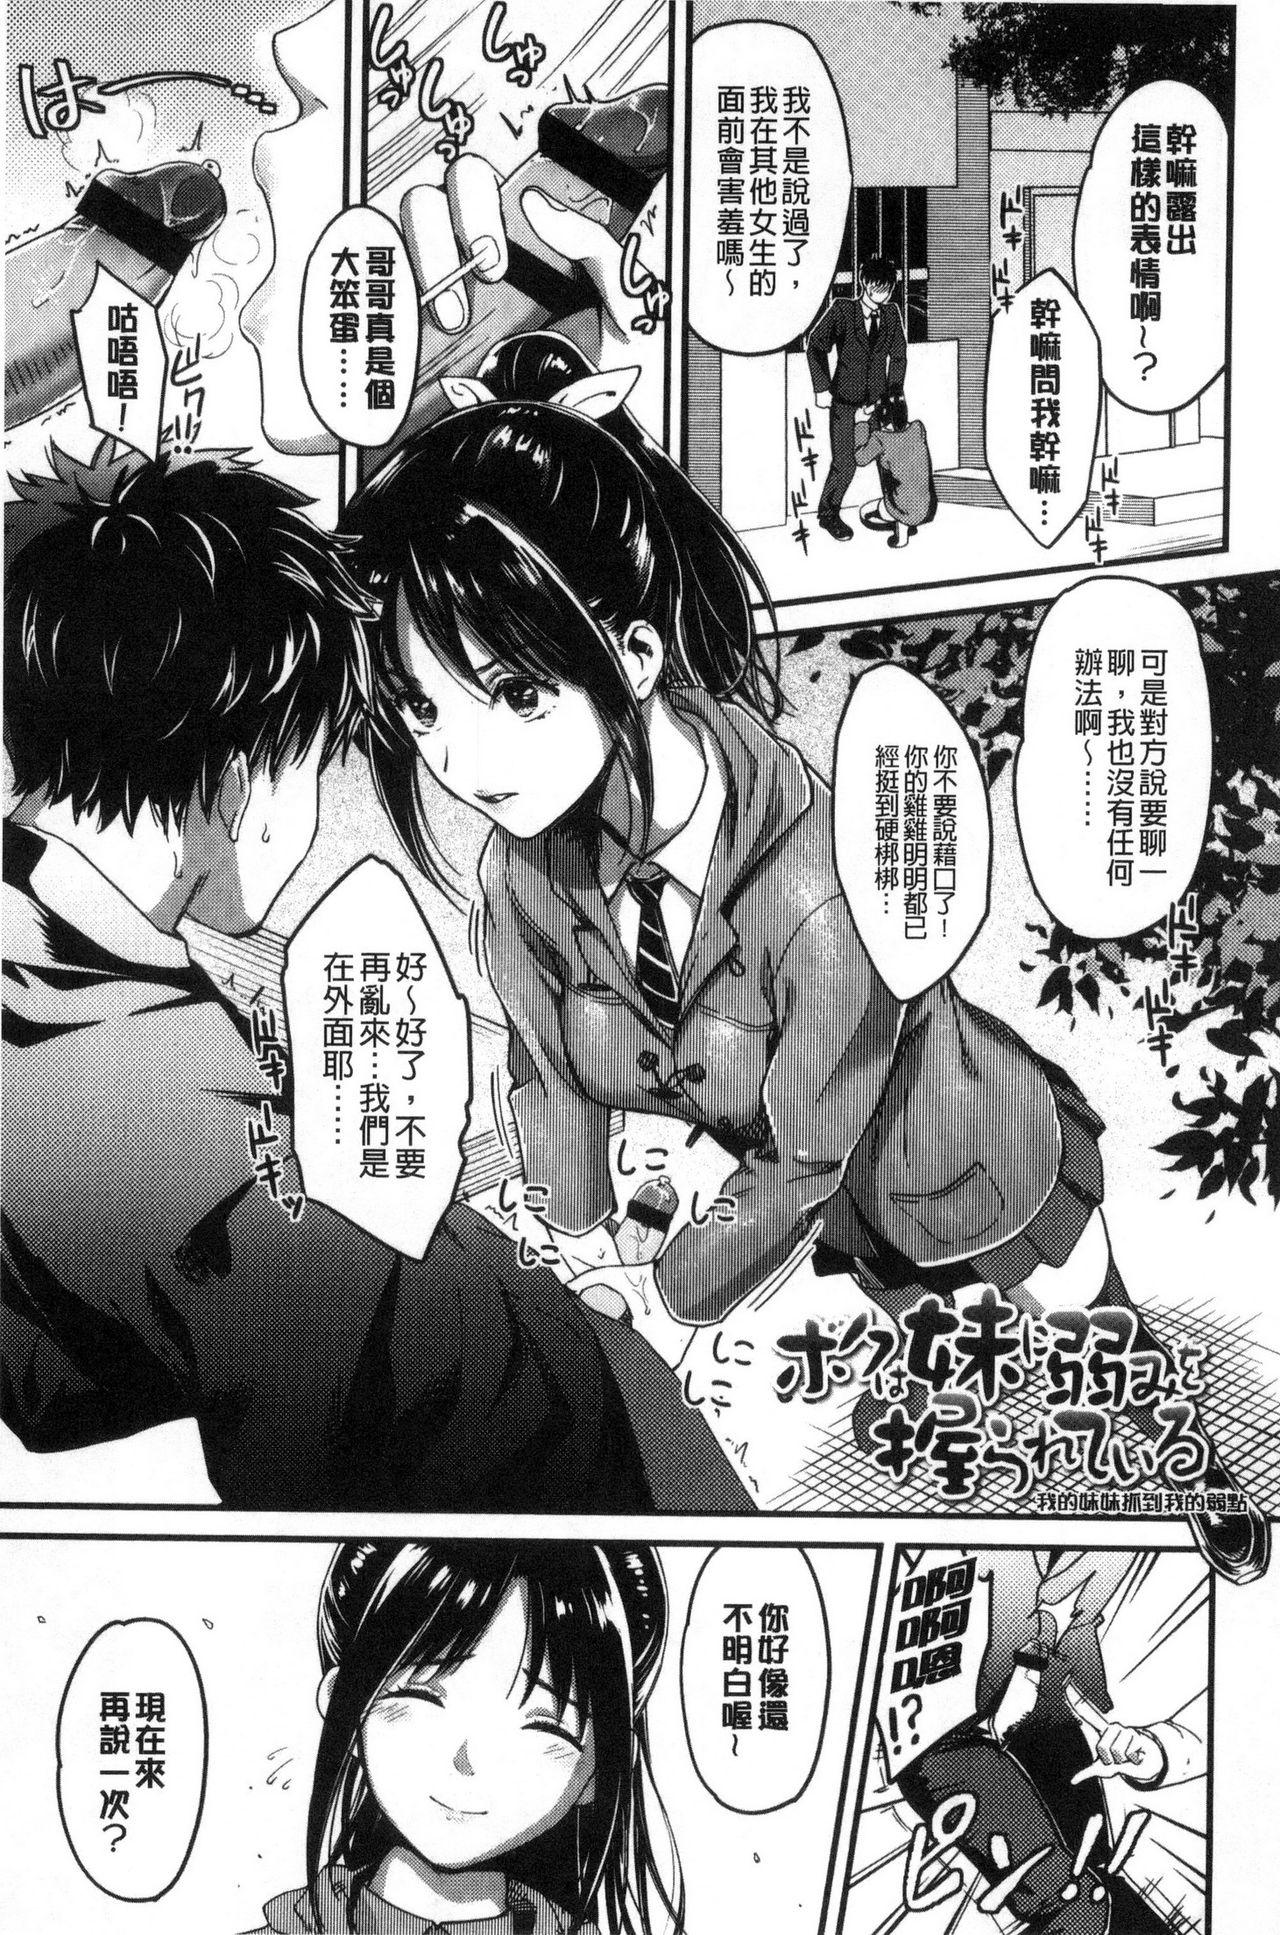 Seifuku no Mama Aishinasai! - Love in school uniform 22